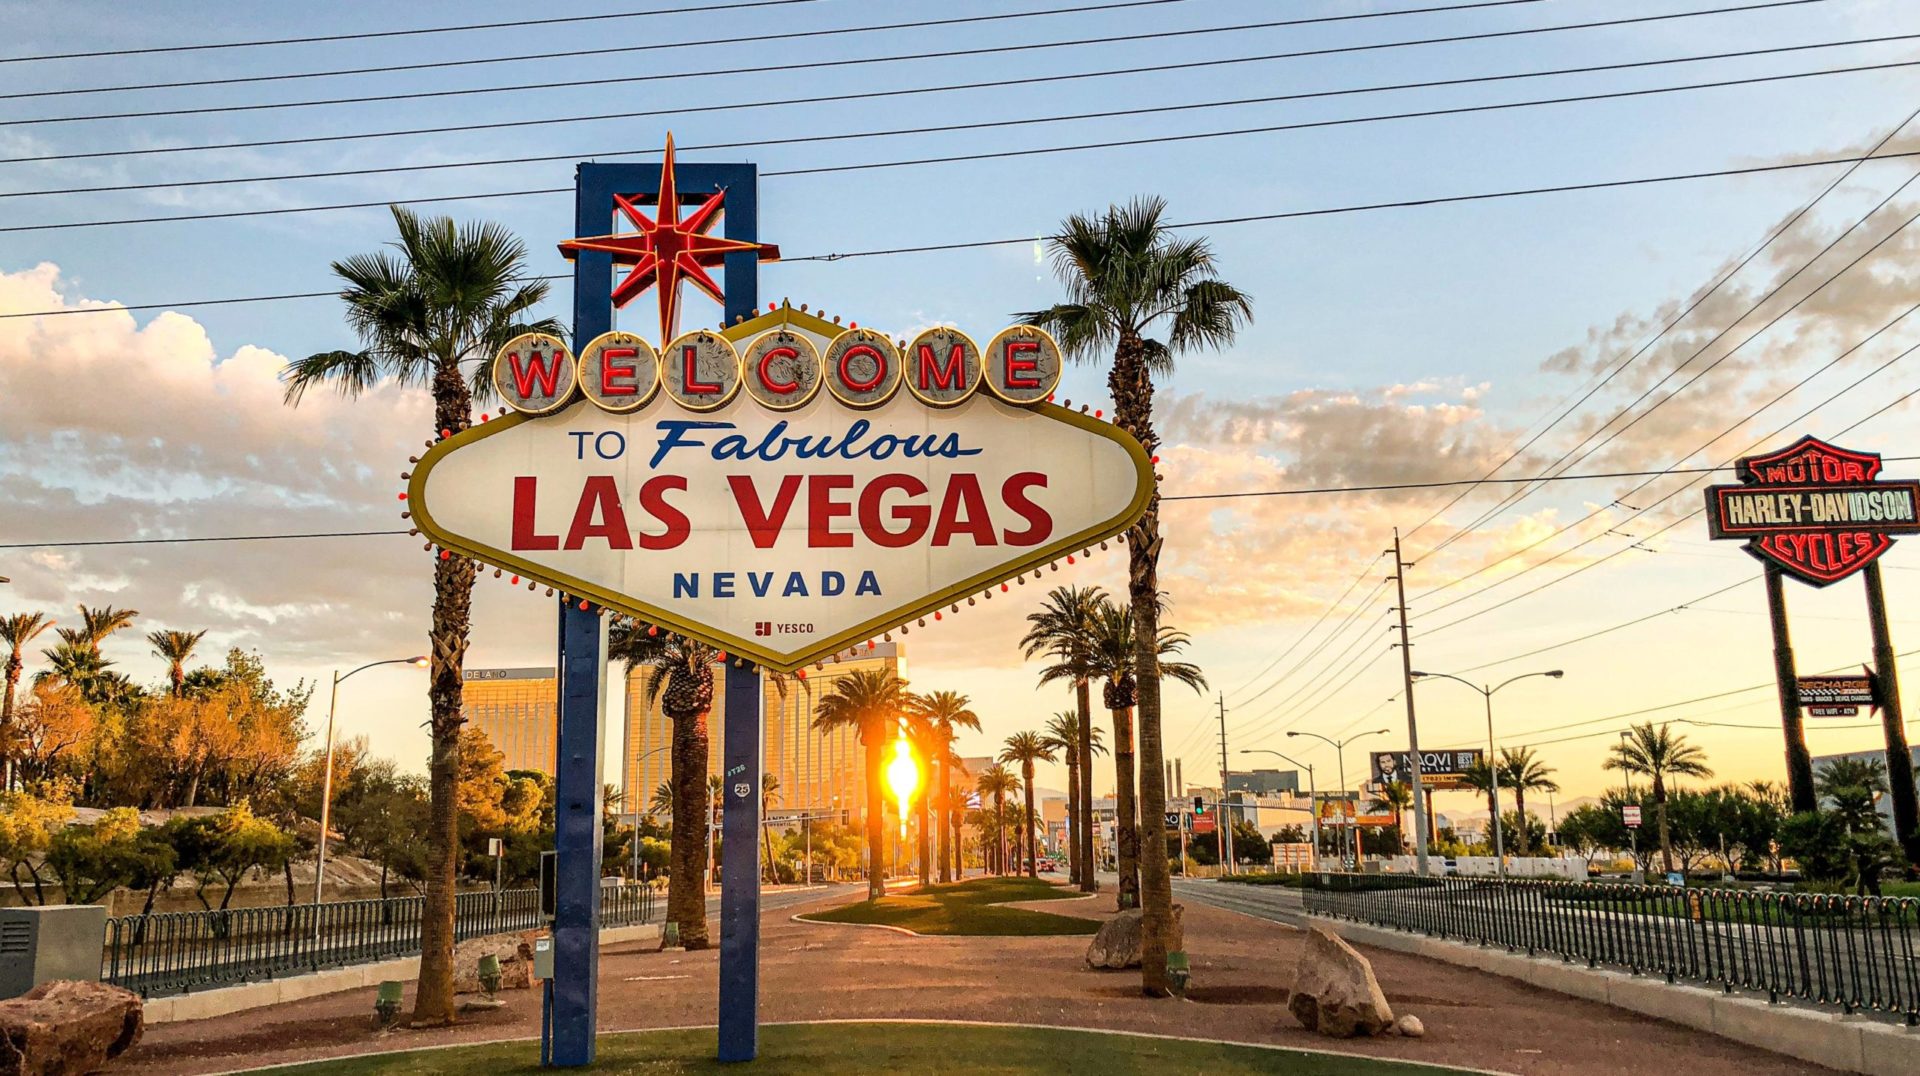 Las Vegas: 7 stvari koje o njemu vjerojatno niste znali